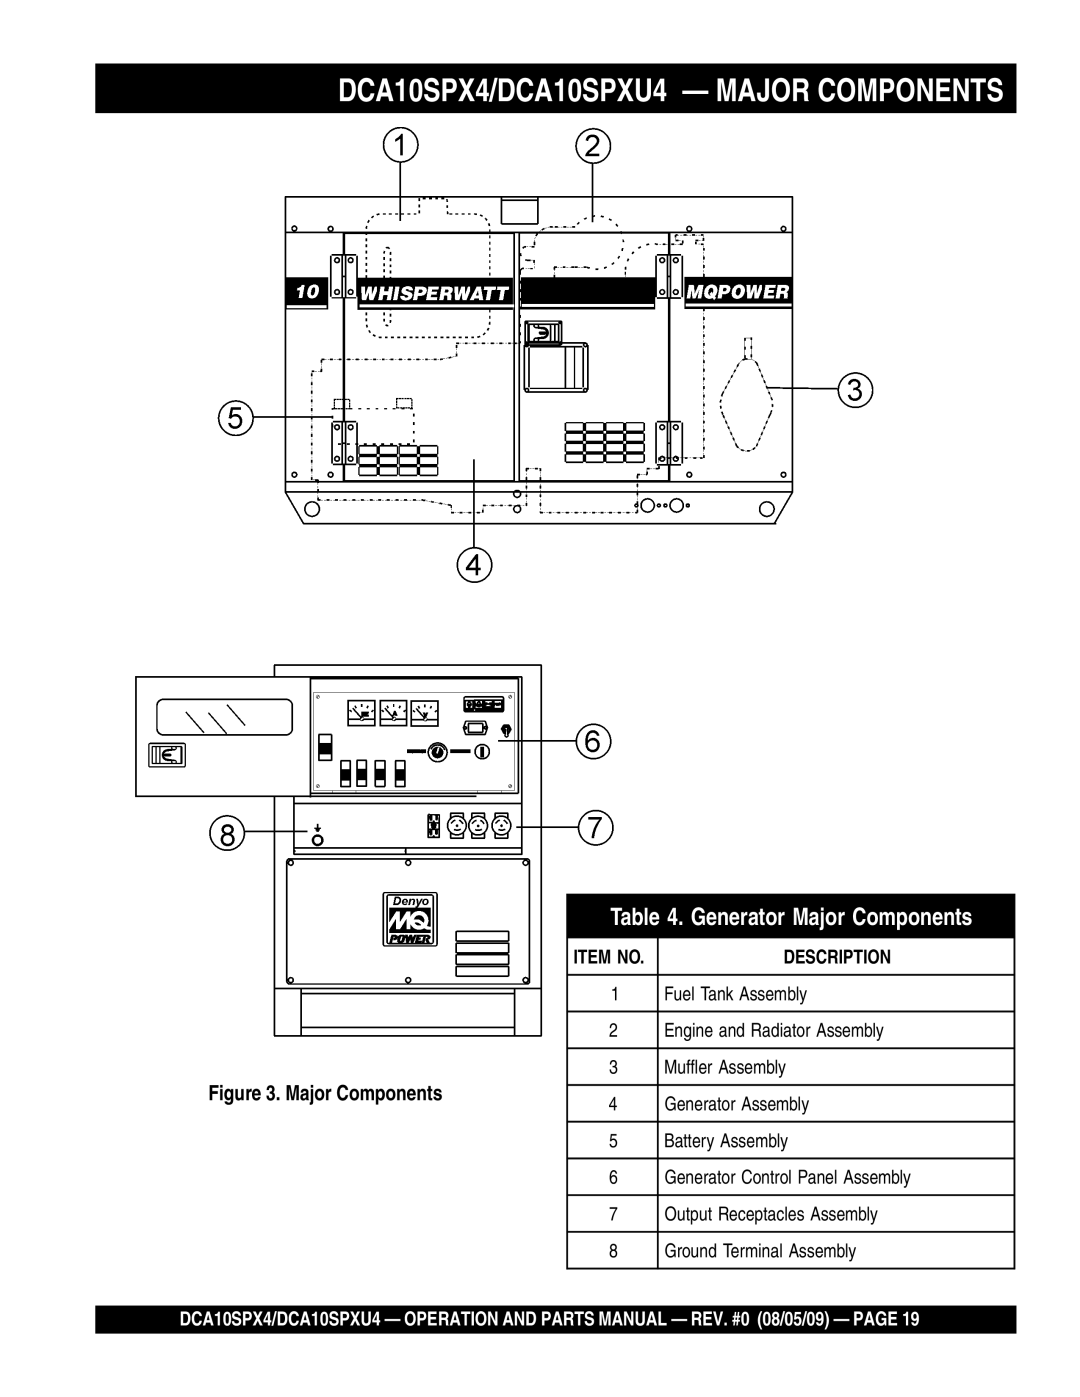 Multiquip operation manual DCA10SPX4/DCA10SPXU4 - MAJOR COMPONENTS, Generator Major Components, Description, Item No 